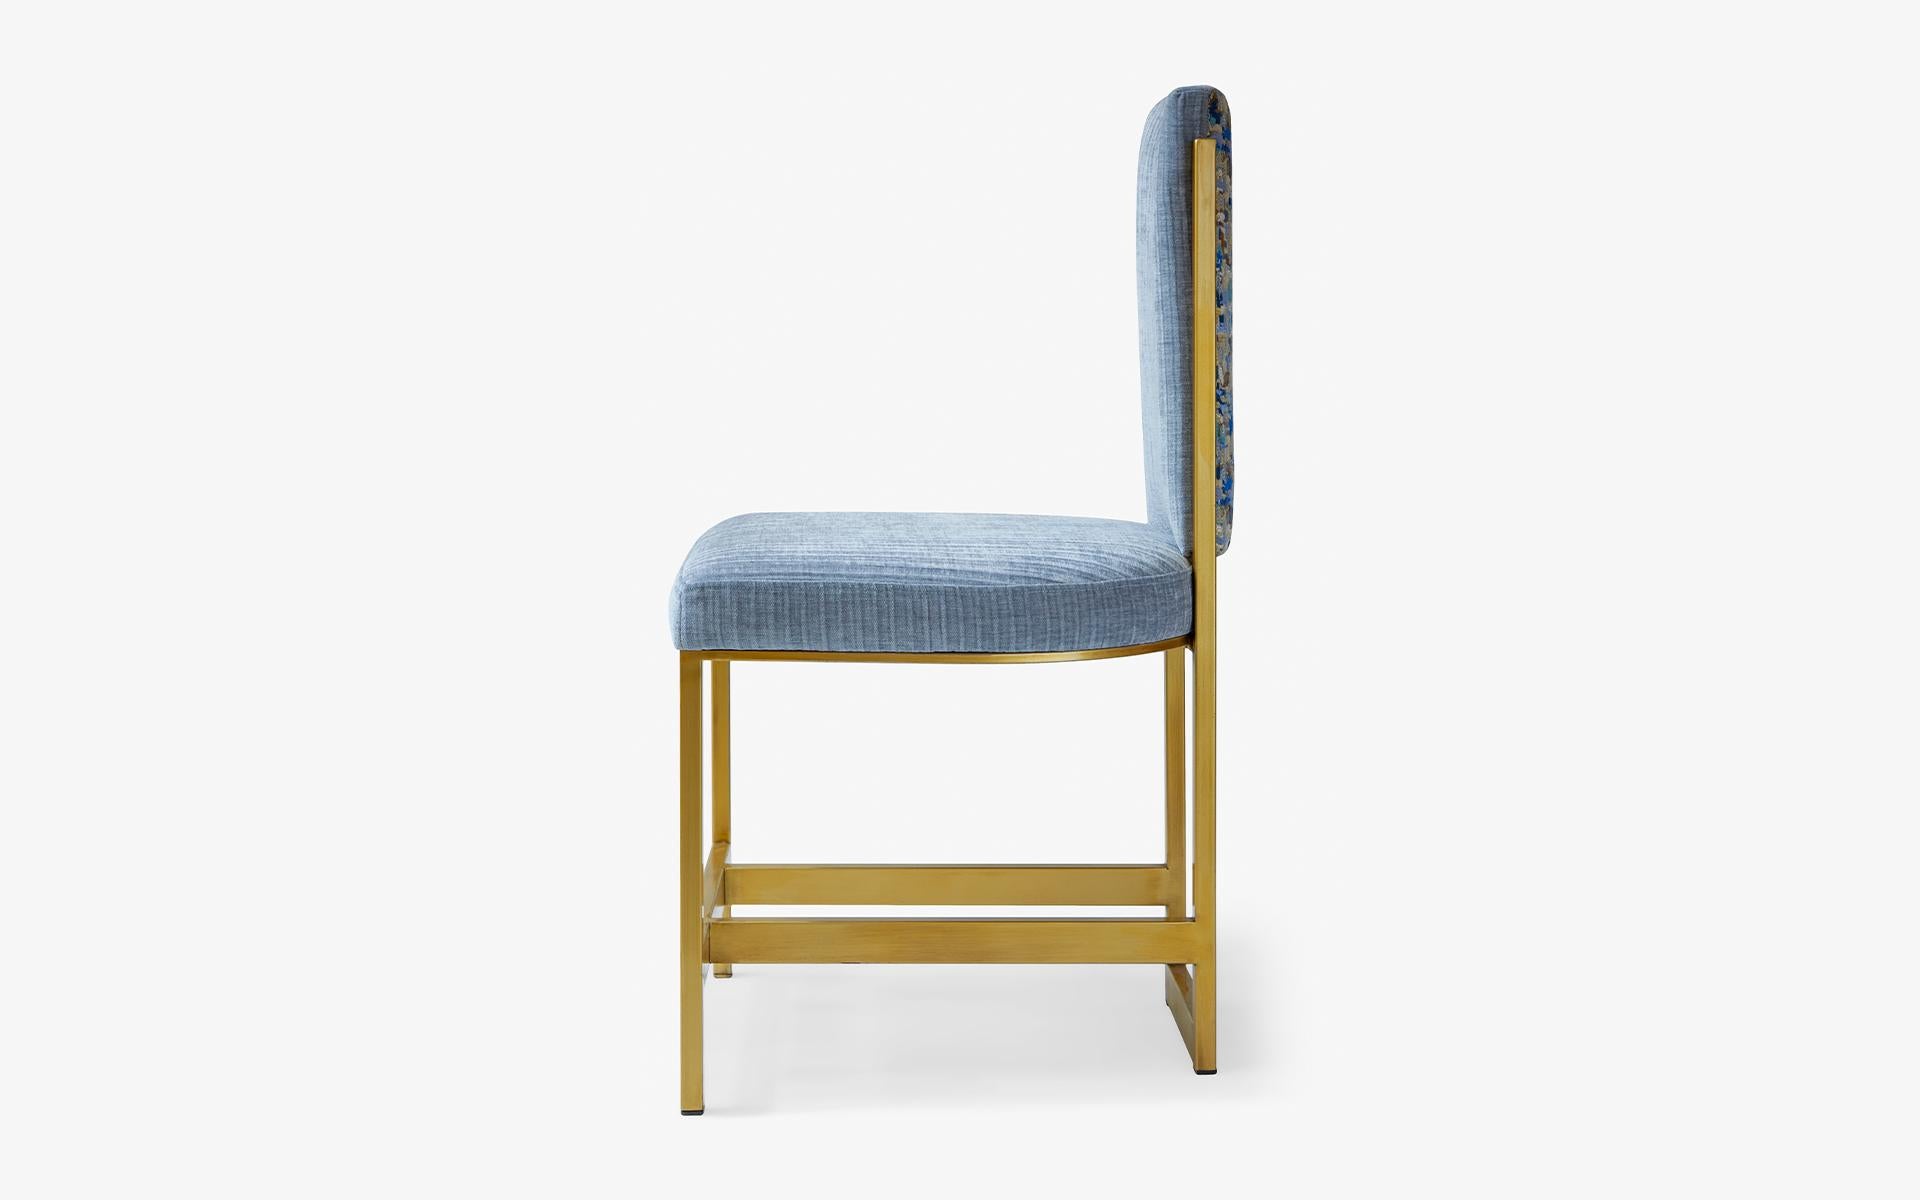 Der blaue Sessel von Kenzo bringt mit seiner feinen Verarbeitung und seiner ästhetischen Form in Verbindung mit praktischem Komfort Ihre Vorliebe für die Antike zum Ausdruck.

Maße: Länge: 17.7'' / Tiefe: 20.9'' / Höhe: 36.2'' / Sitzhöhe: